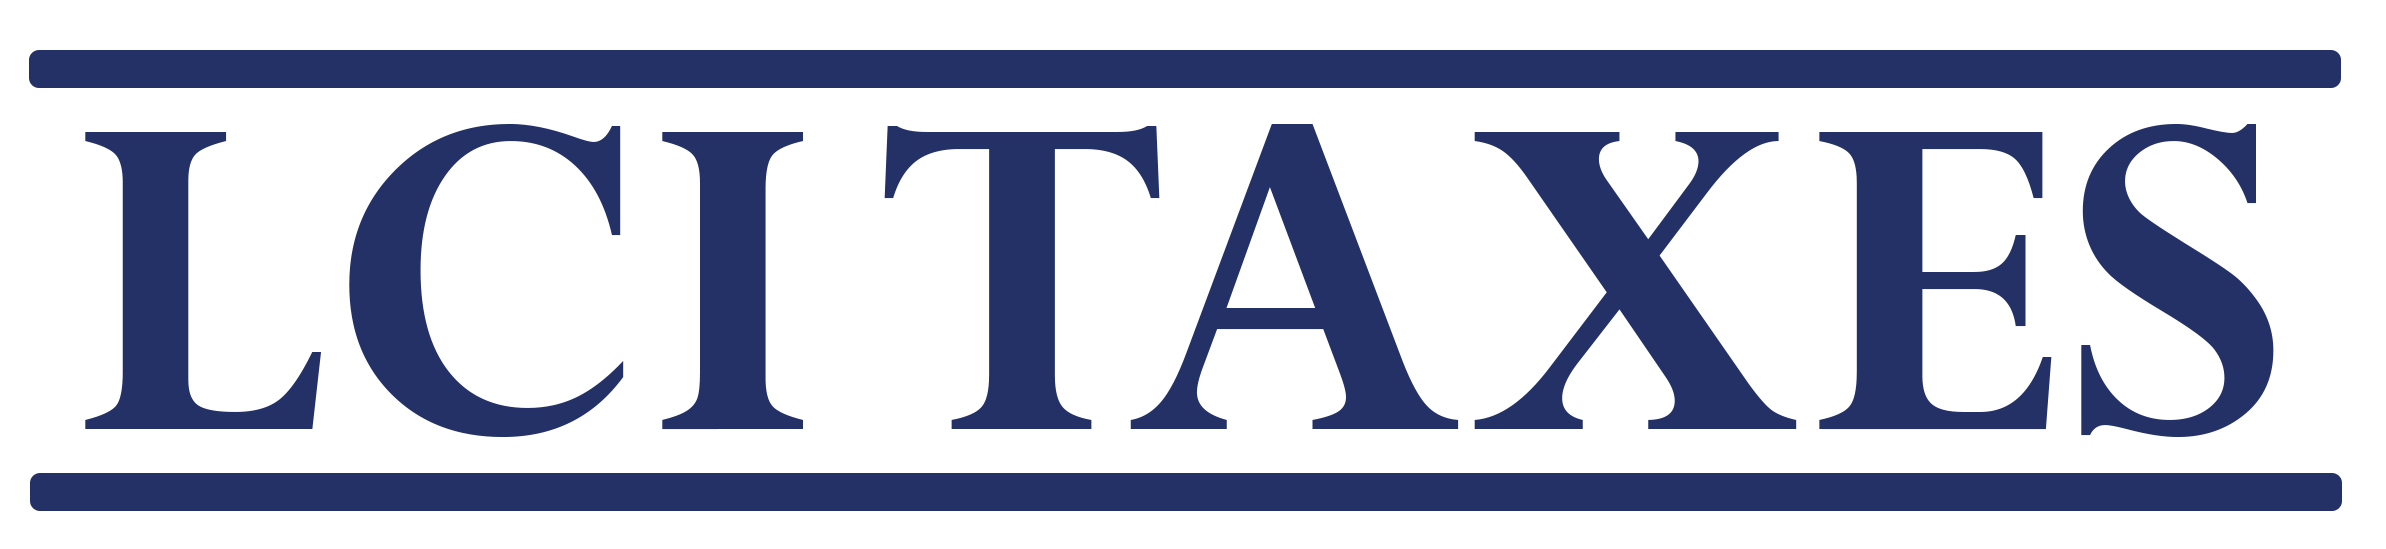 LCI Taxes logo 